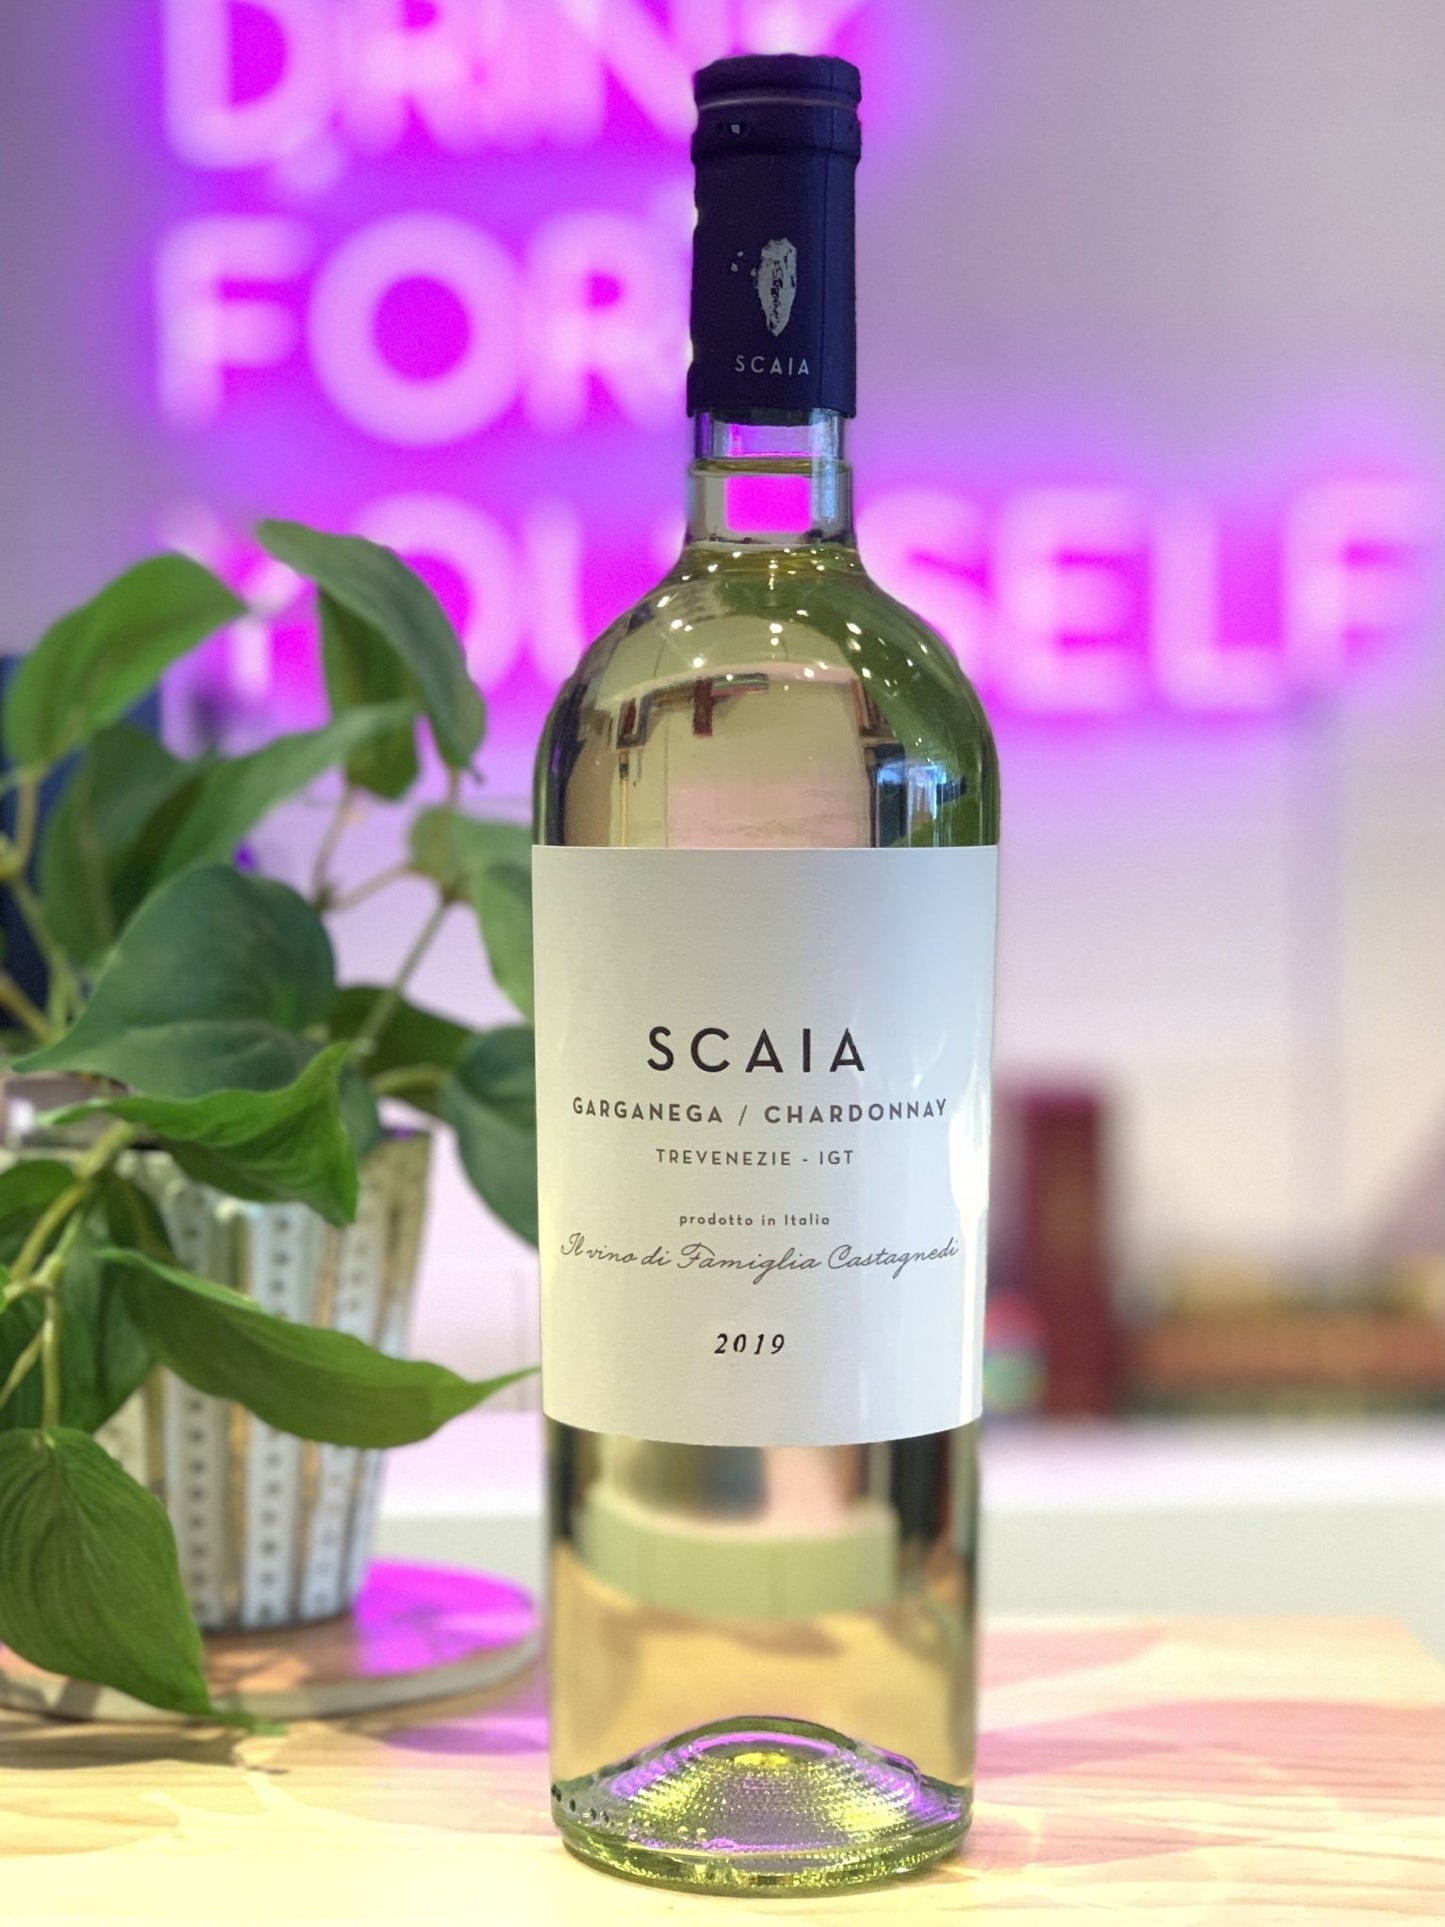 Scaia 2019 Chardonnay and Garganega, Trevenezie, Veneto, Italy - DECANTsf